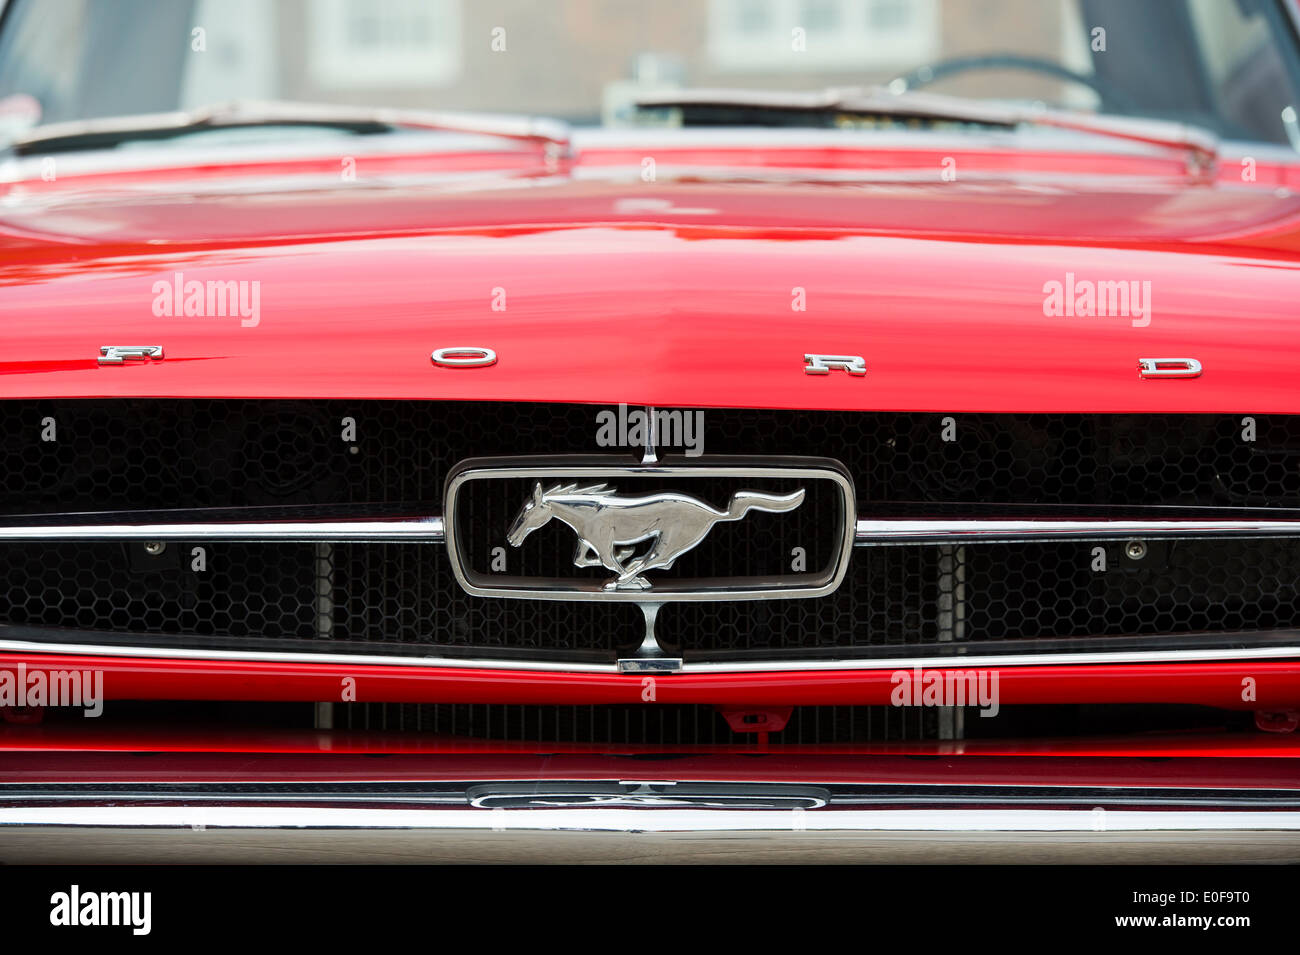 Ford Mustang Pferd Logo auf dem Kühlergrill des klassischen amerikanischen  Auto Stockfotografie - Alamy